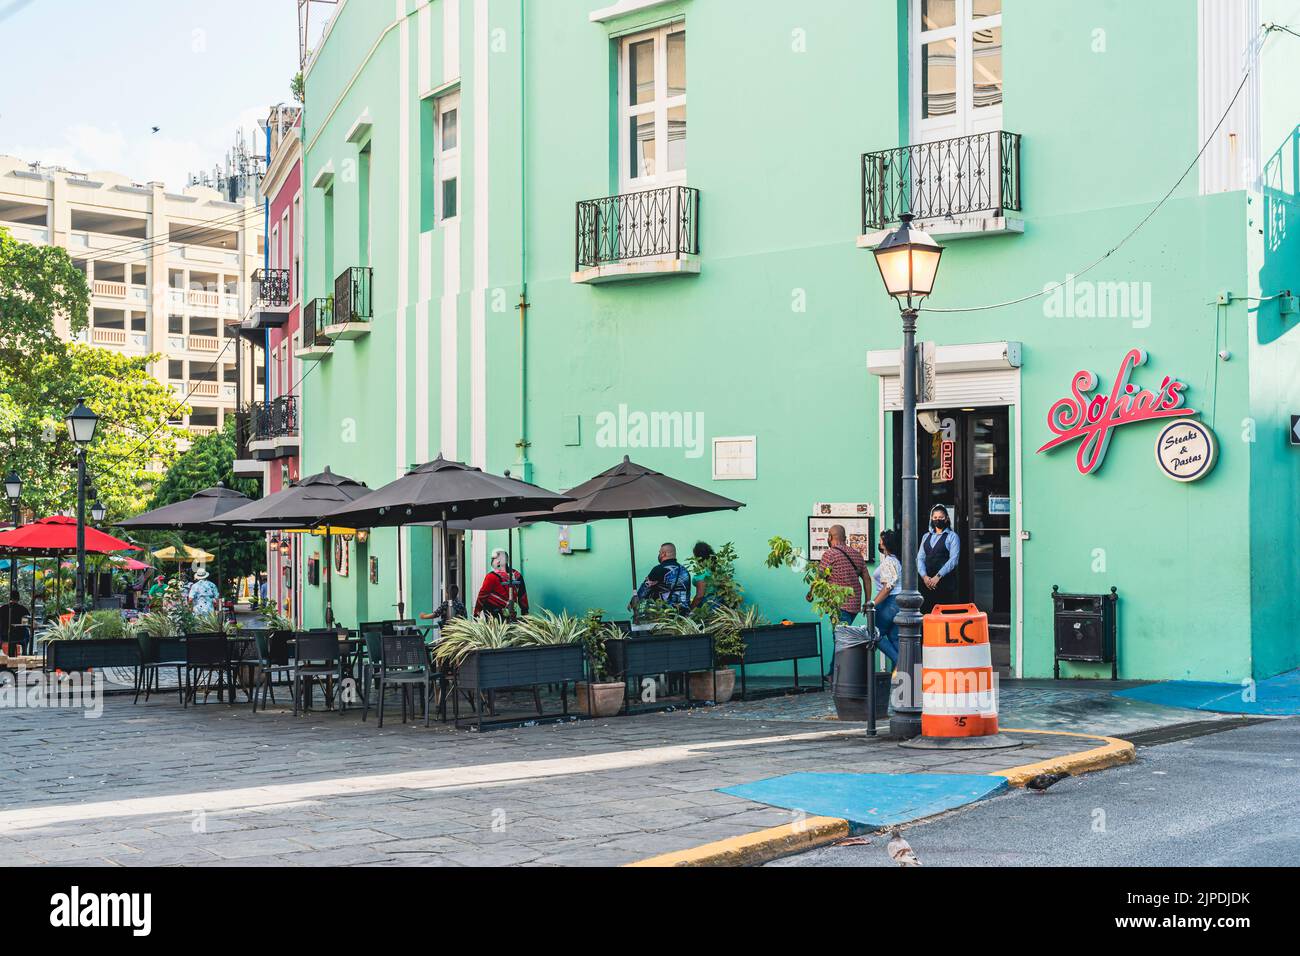 Vieux San Juan, Porto Rico - 25 août 2021: Restaurant de couleur verte situé dans le vieux San Juan Porto Rico. Banque D'Images